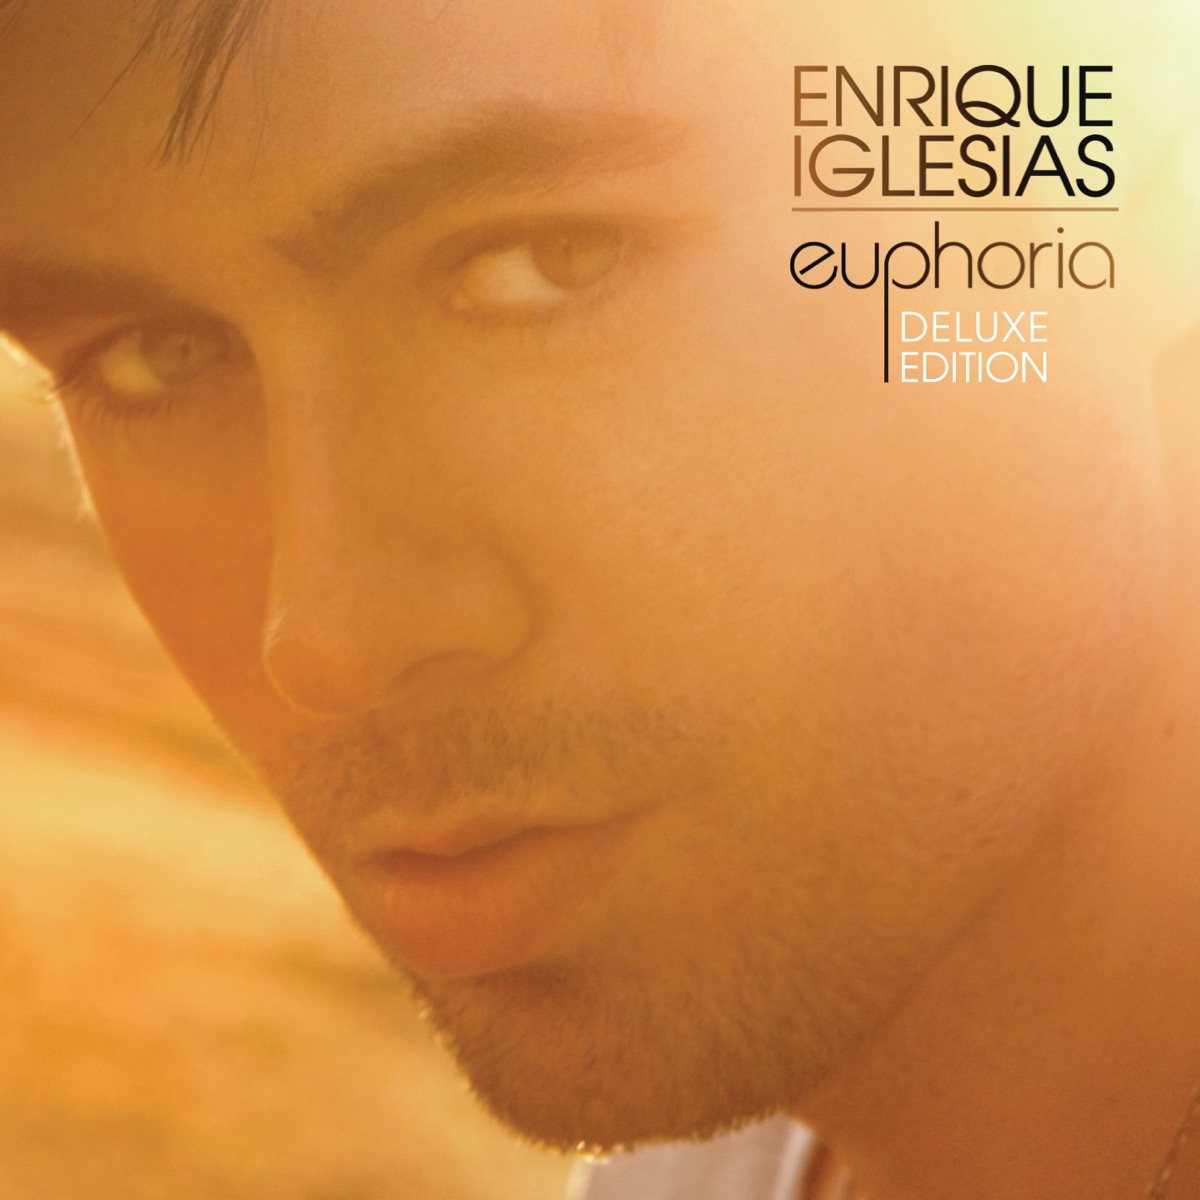 FINAL (Vol.2) - Album by Enrique Iglesias - Apple Music